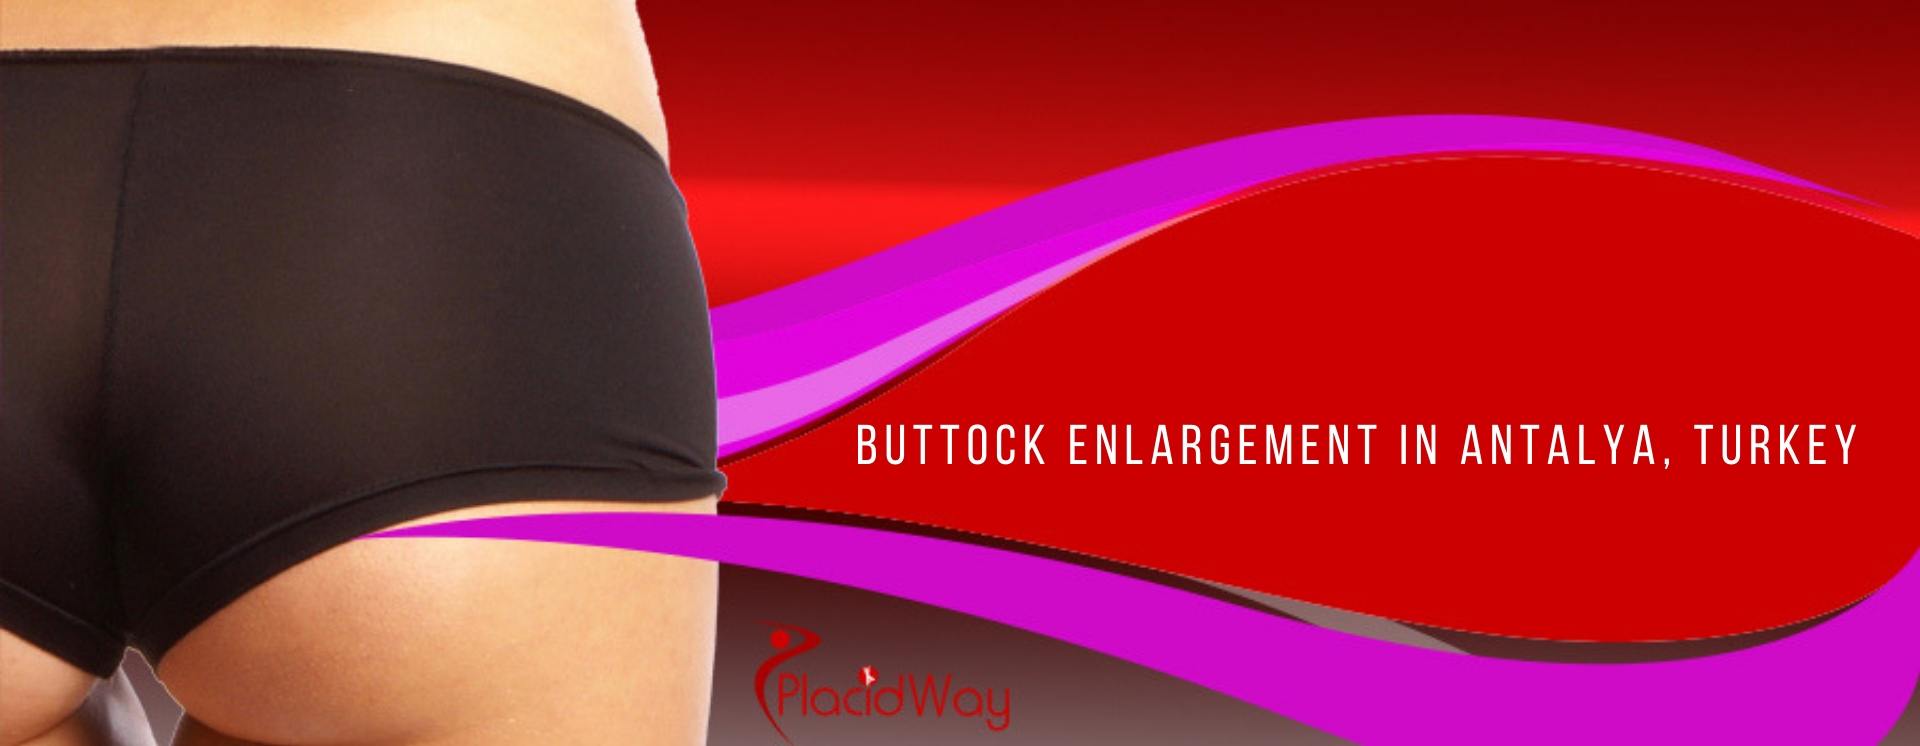 Buttock Enlargement in Antalya, Turkey